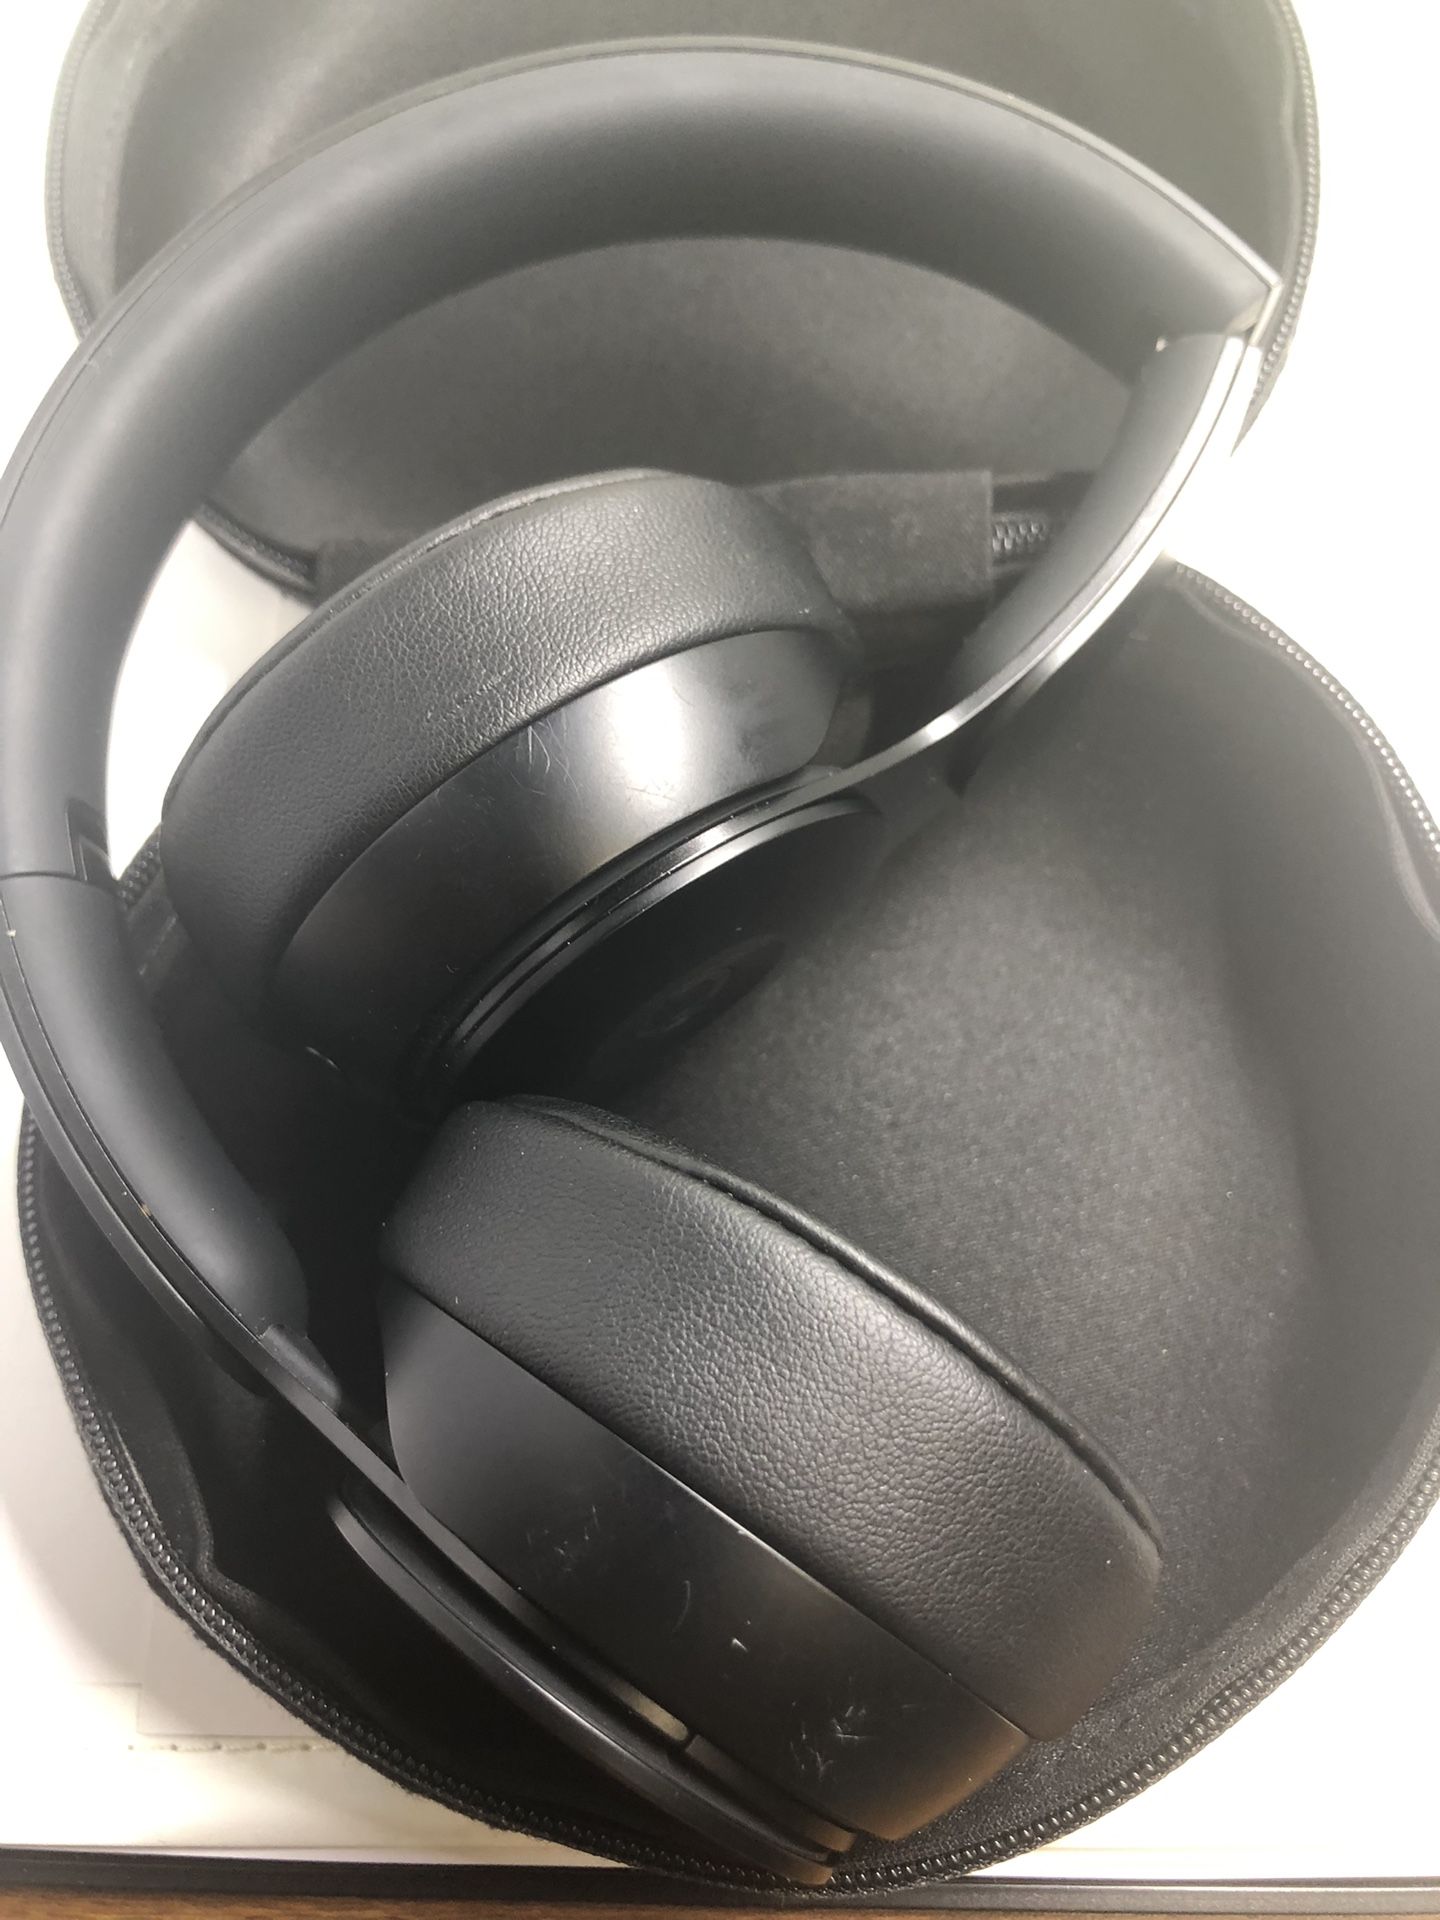 Beats Solo Pro Wireless Noise Cancelling On-Ear Headphones 